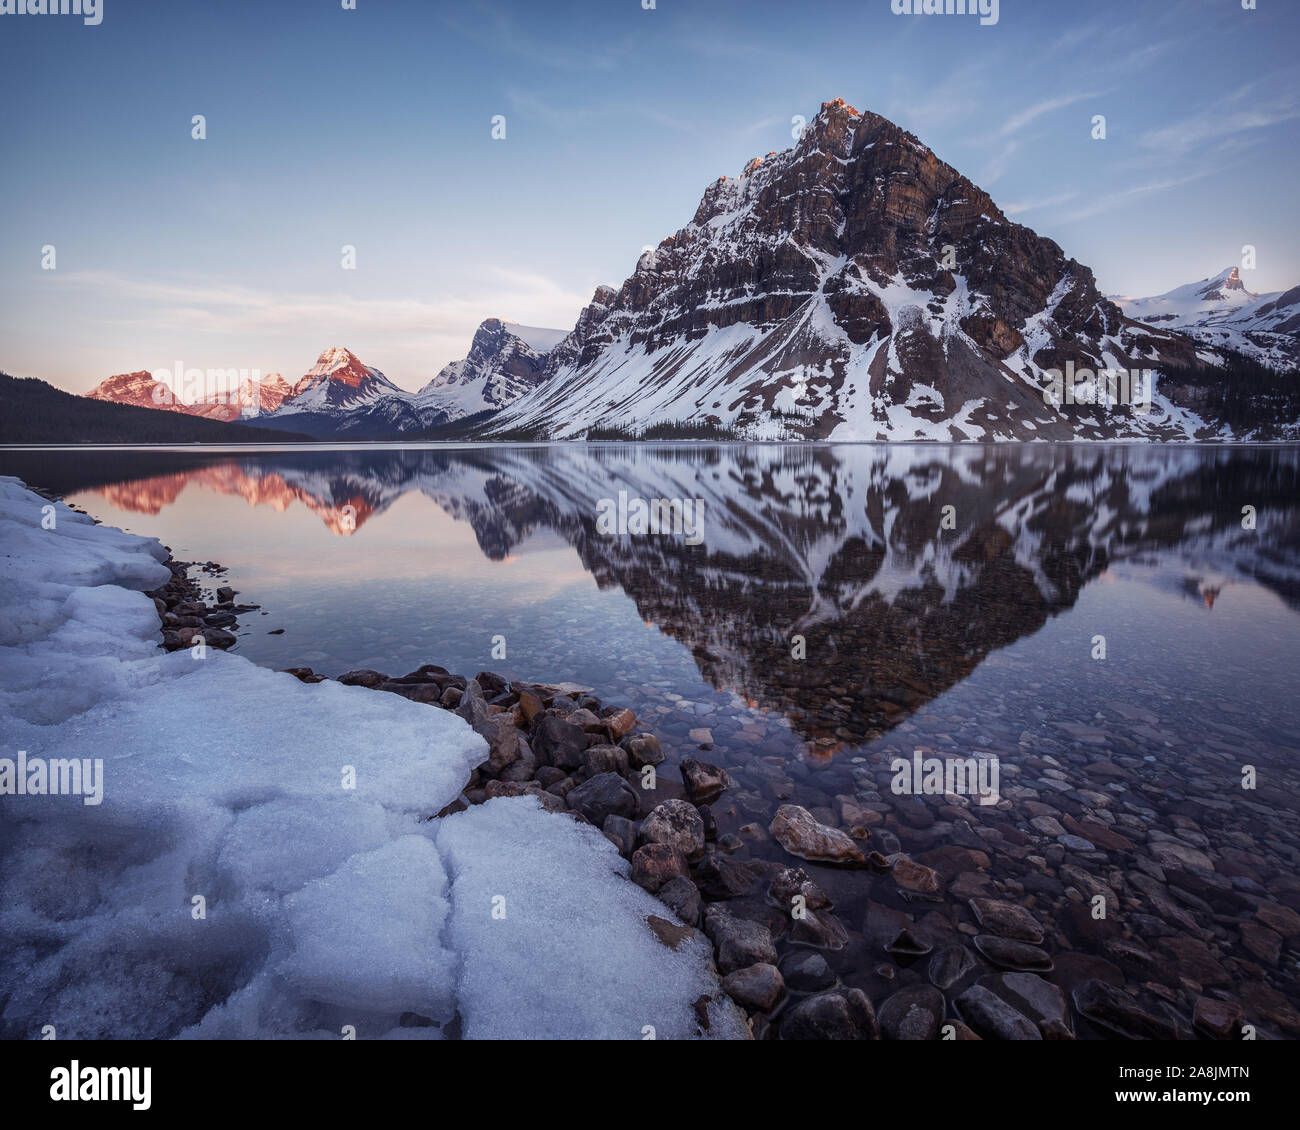 Calma inizio serata primaverile al Lago di prua con montagna Crowfoot riflessa sullo specchio come acque. Paesaggio di neve il parco nazionale di Banff, Montagne Rocciose Canadesi Foto Stock